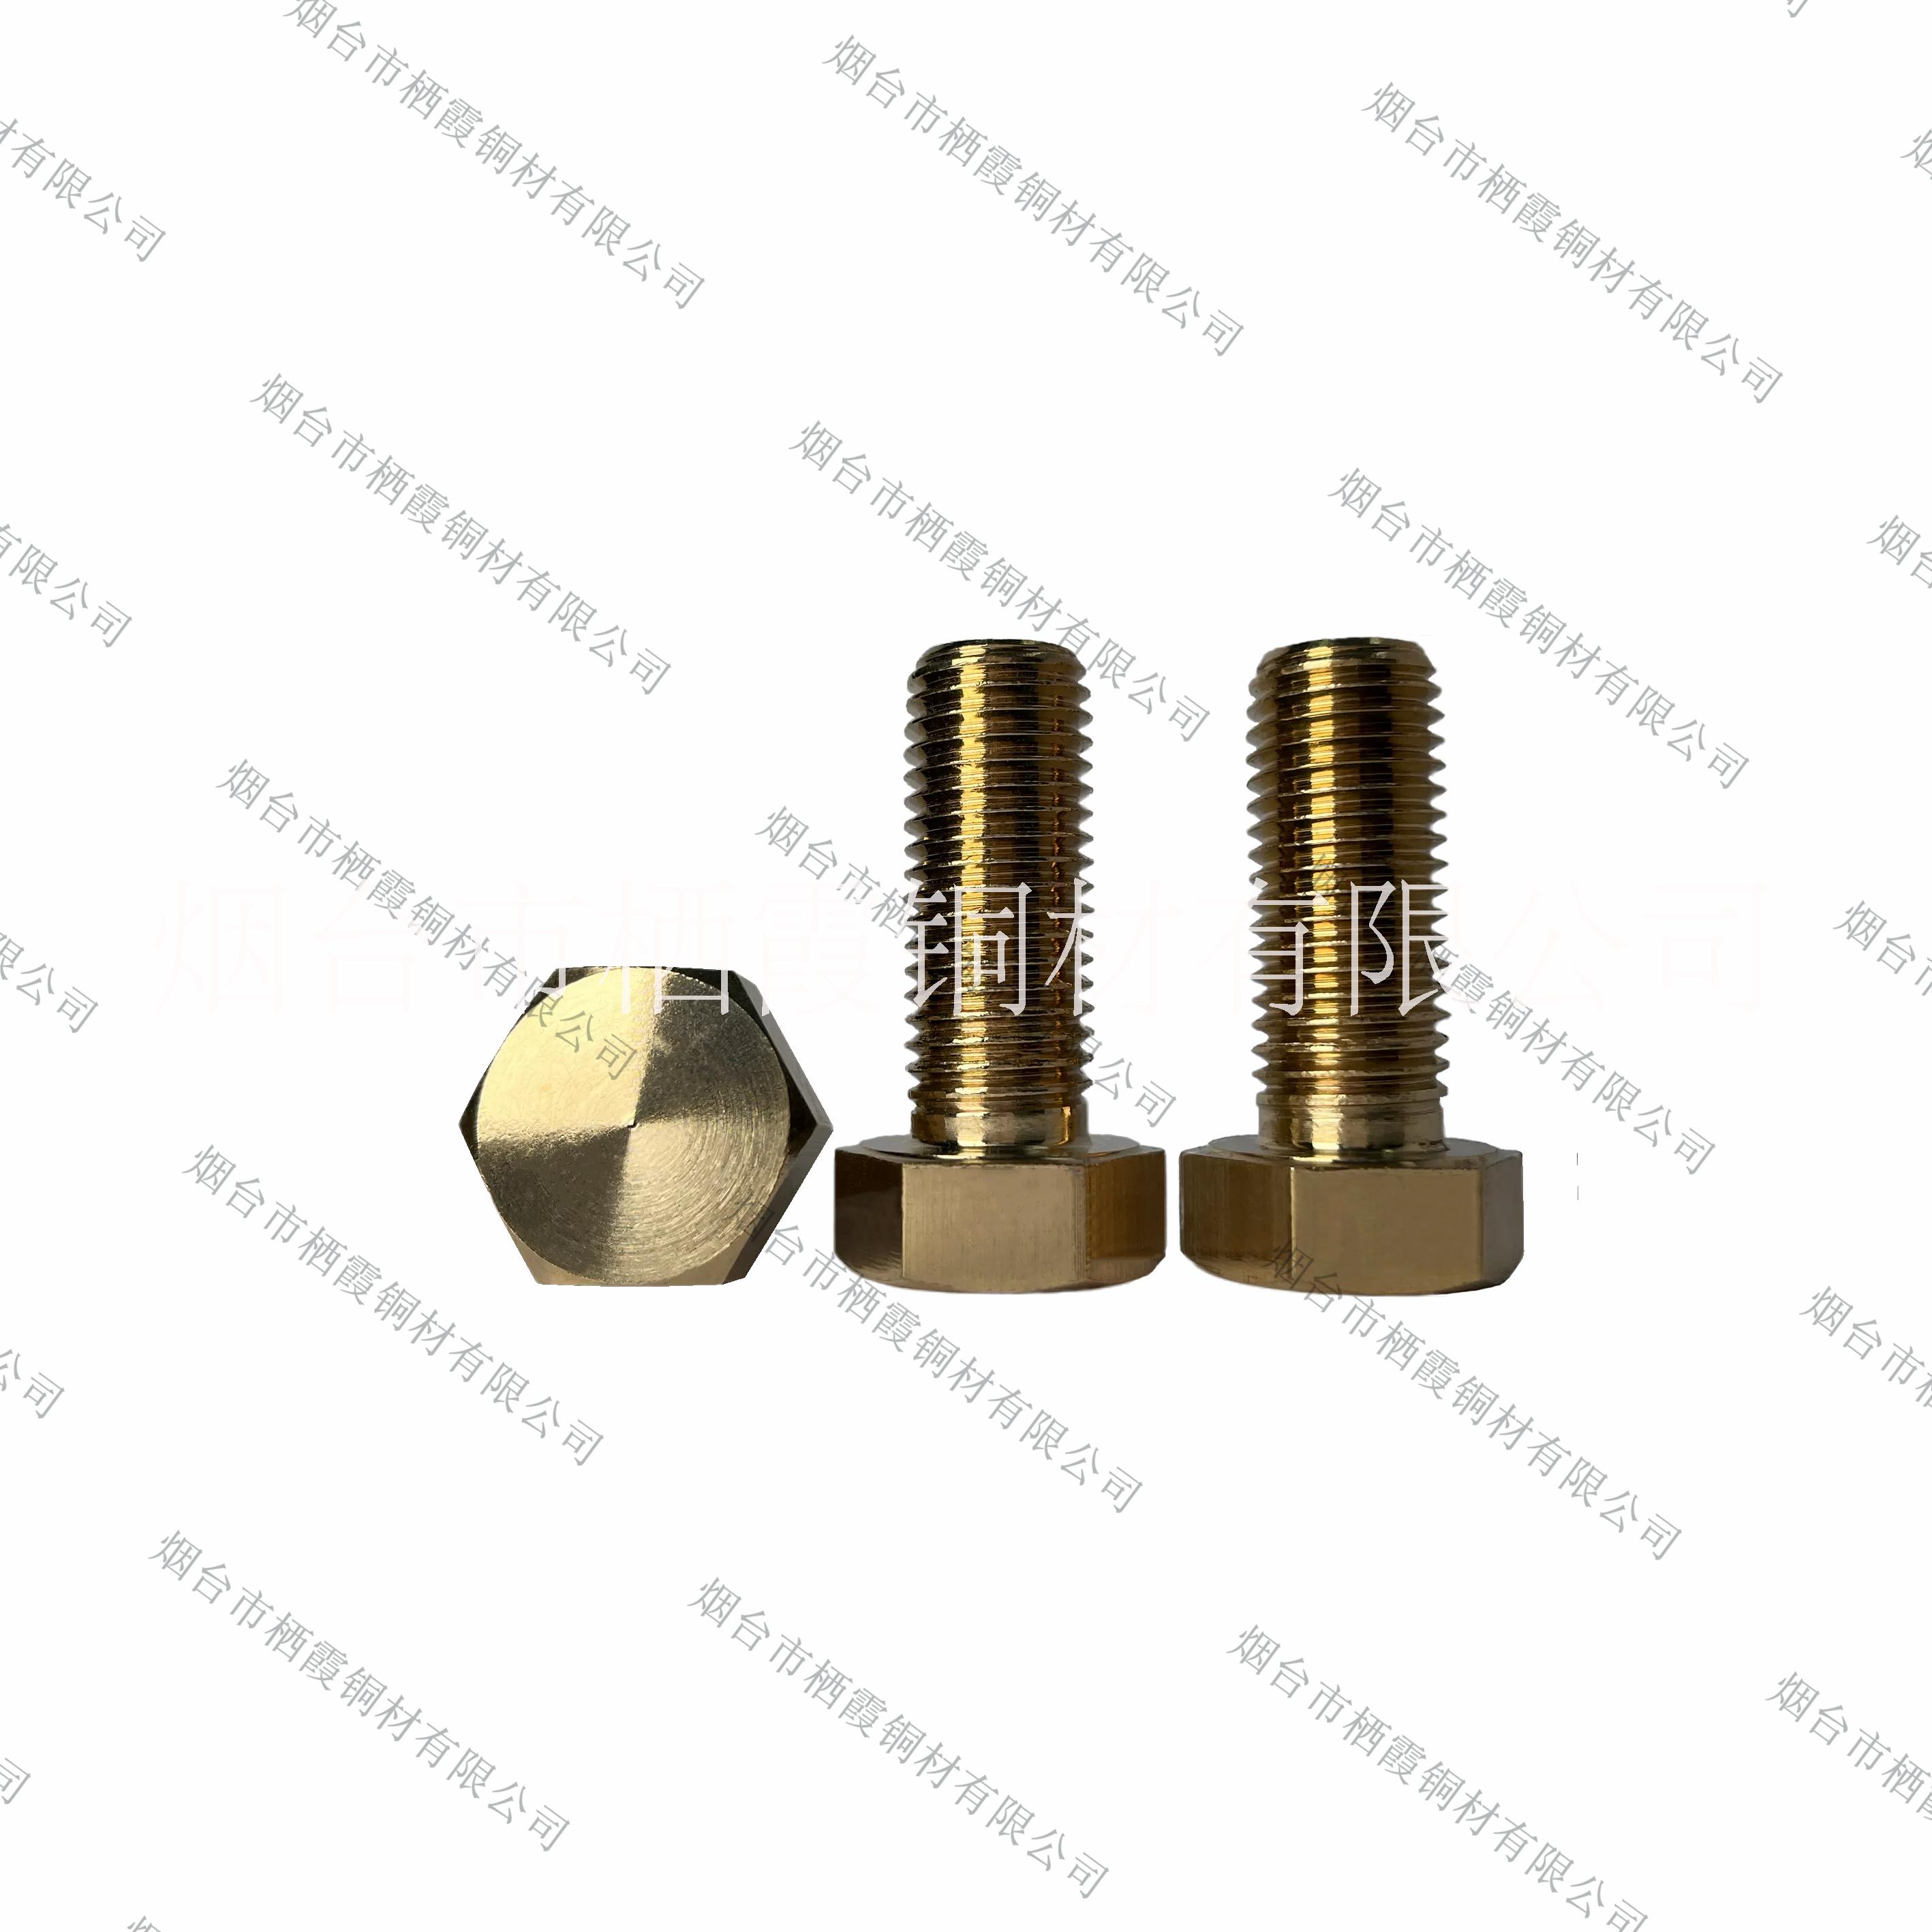 供应铝青铜六角螺栓 铝青铜螺丝 铝青铜螺钉 铝青铜螺杆图片